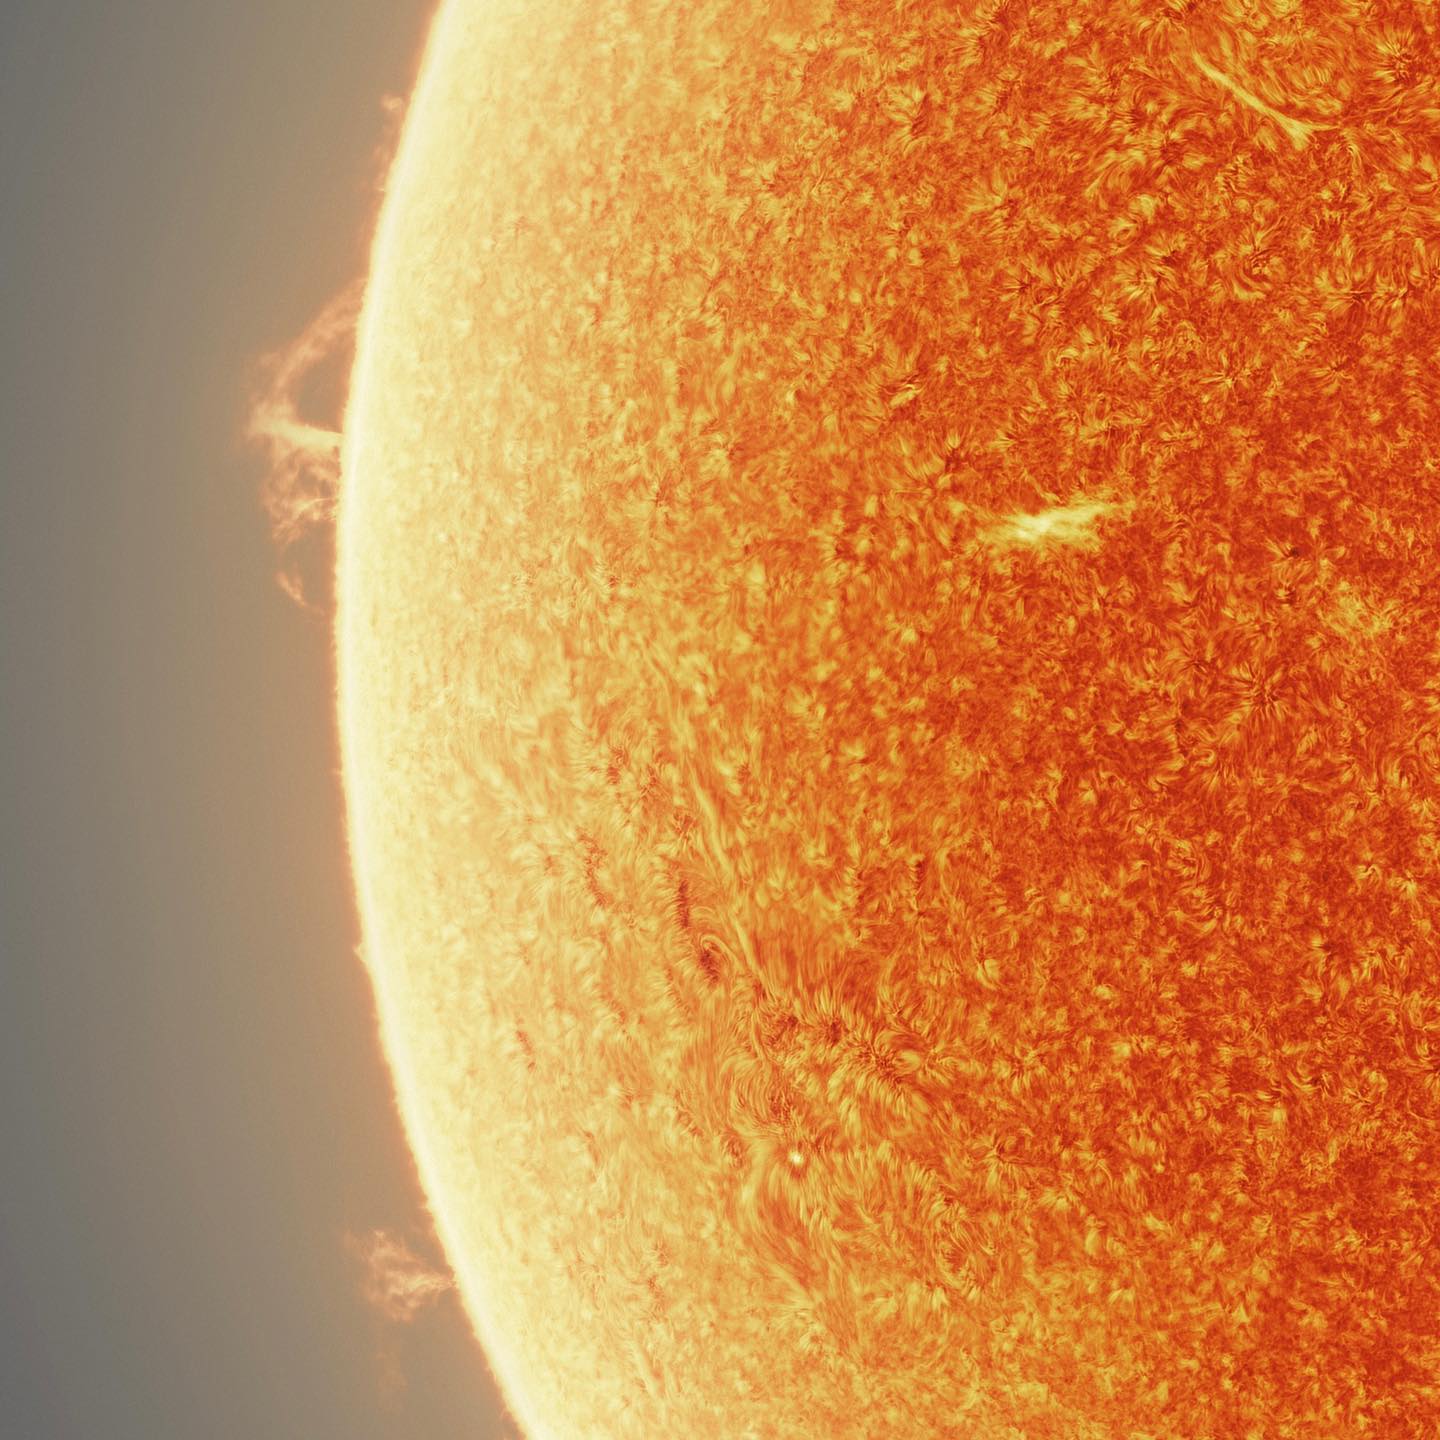 天文摄影家用15万张图制作出一张壮观的太阳照